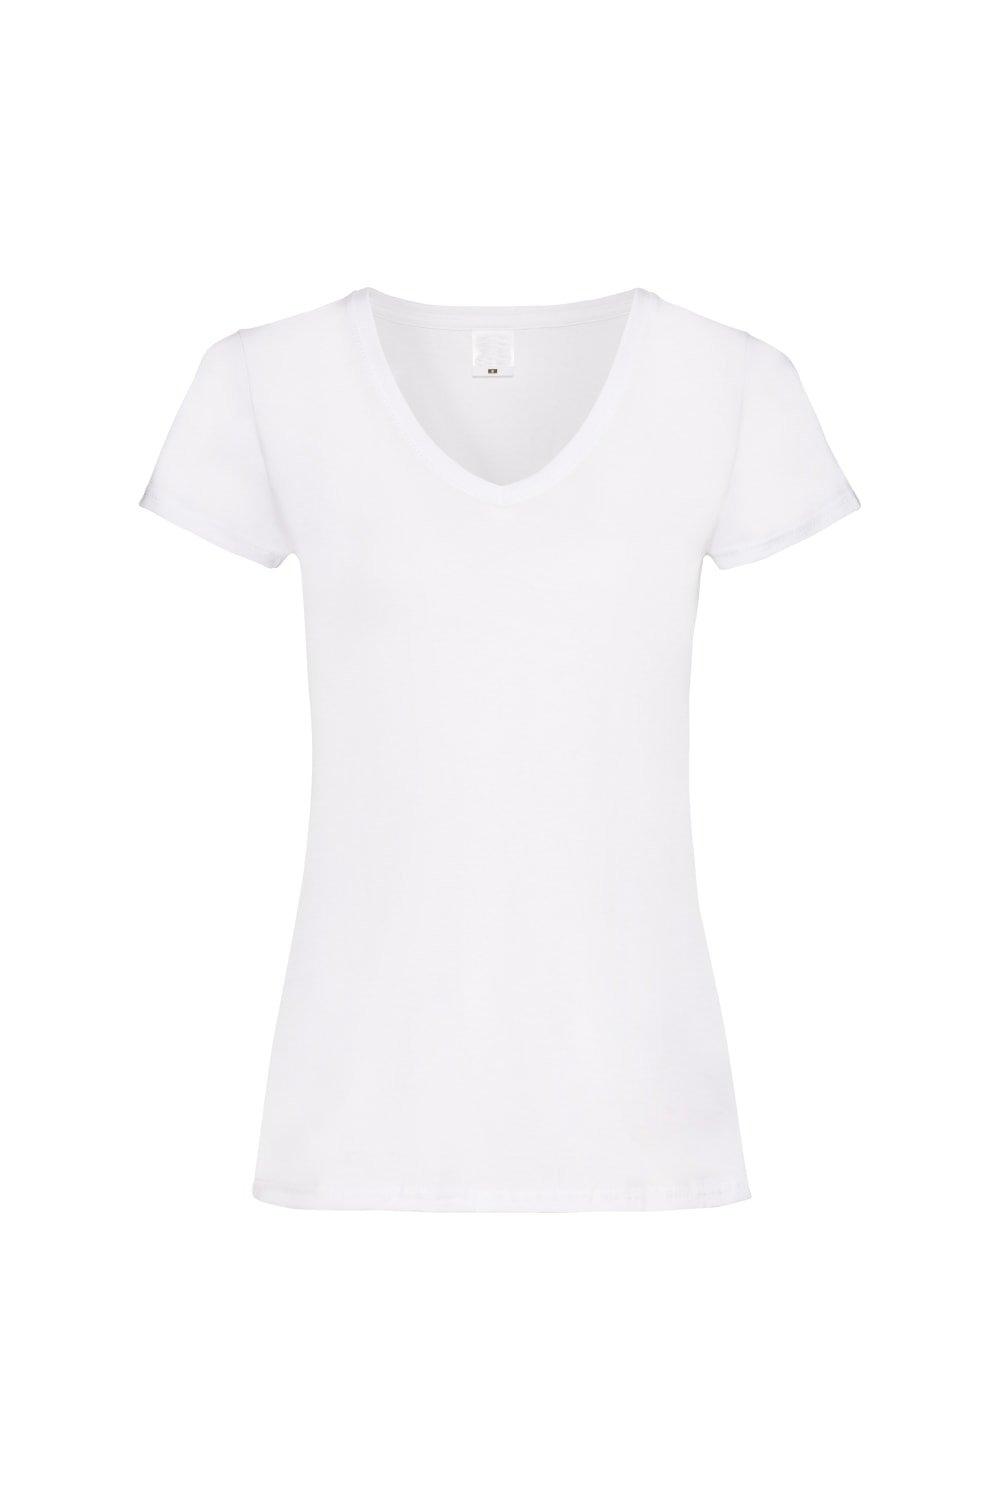 Повседневная футболка Value с V-образным вырезом и короткими рукавами Universal Textiles, белый мужская футболка корги герой s серый меланж